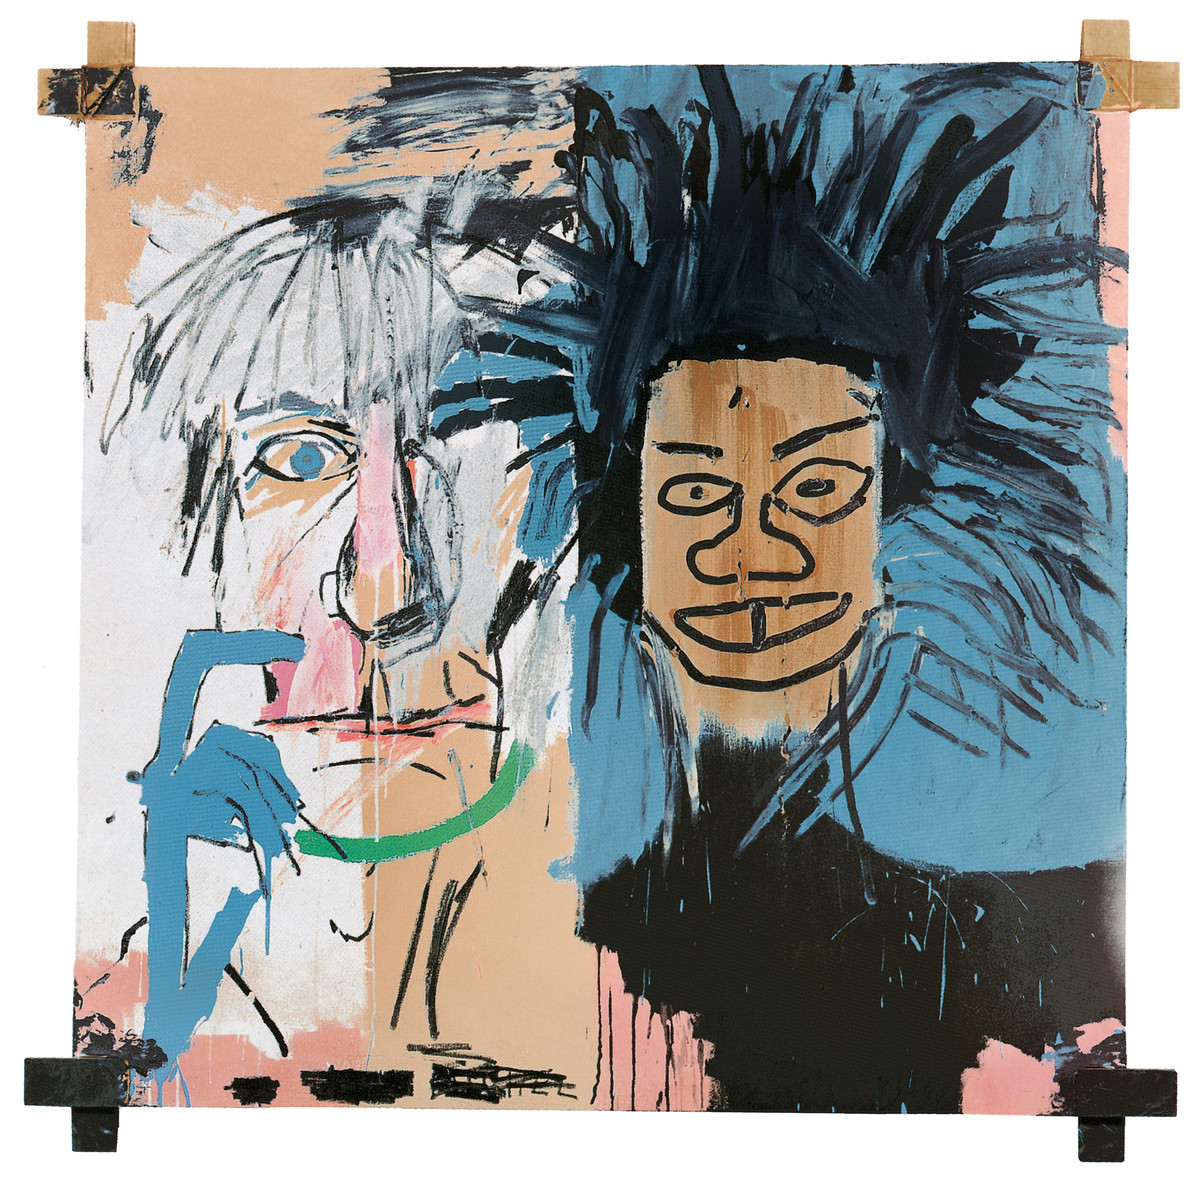 Jean-Michel Basquiat, Dos Cabezas, 1982, Acrylic and oil stick on canvas with wooden supports, Private collection, © VG Bild-Kunst Bonn, 2018 & The Estate of Jean-Michel Basquiat. Licensed by Artestar, New York - Basquiat malte nach der ersten Begegnung Andy Warhol und sich selbst im Doppelporträt.